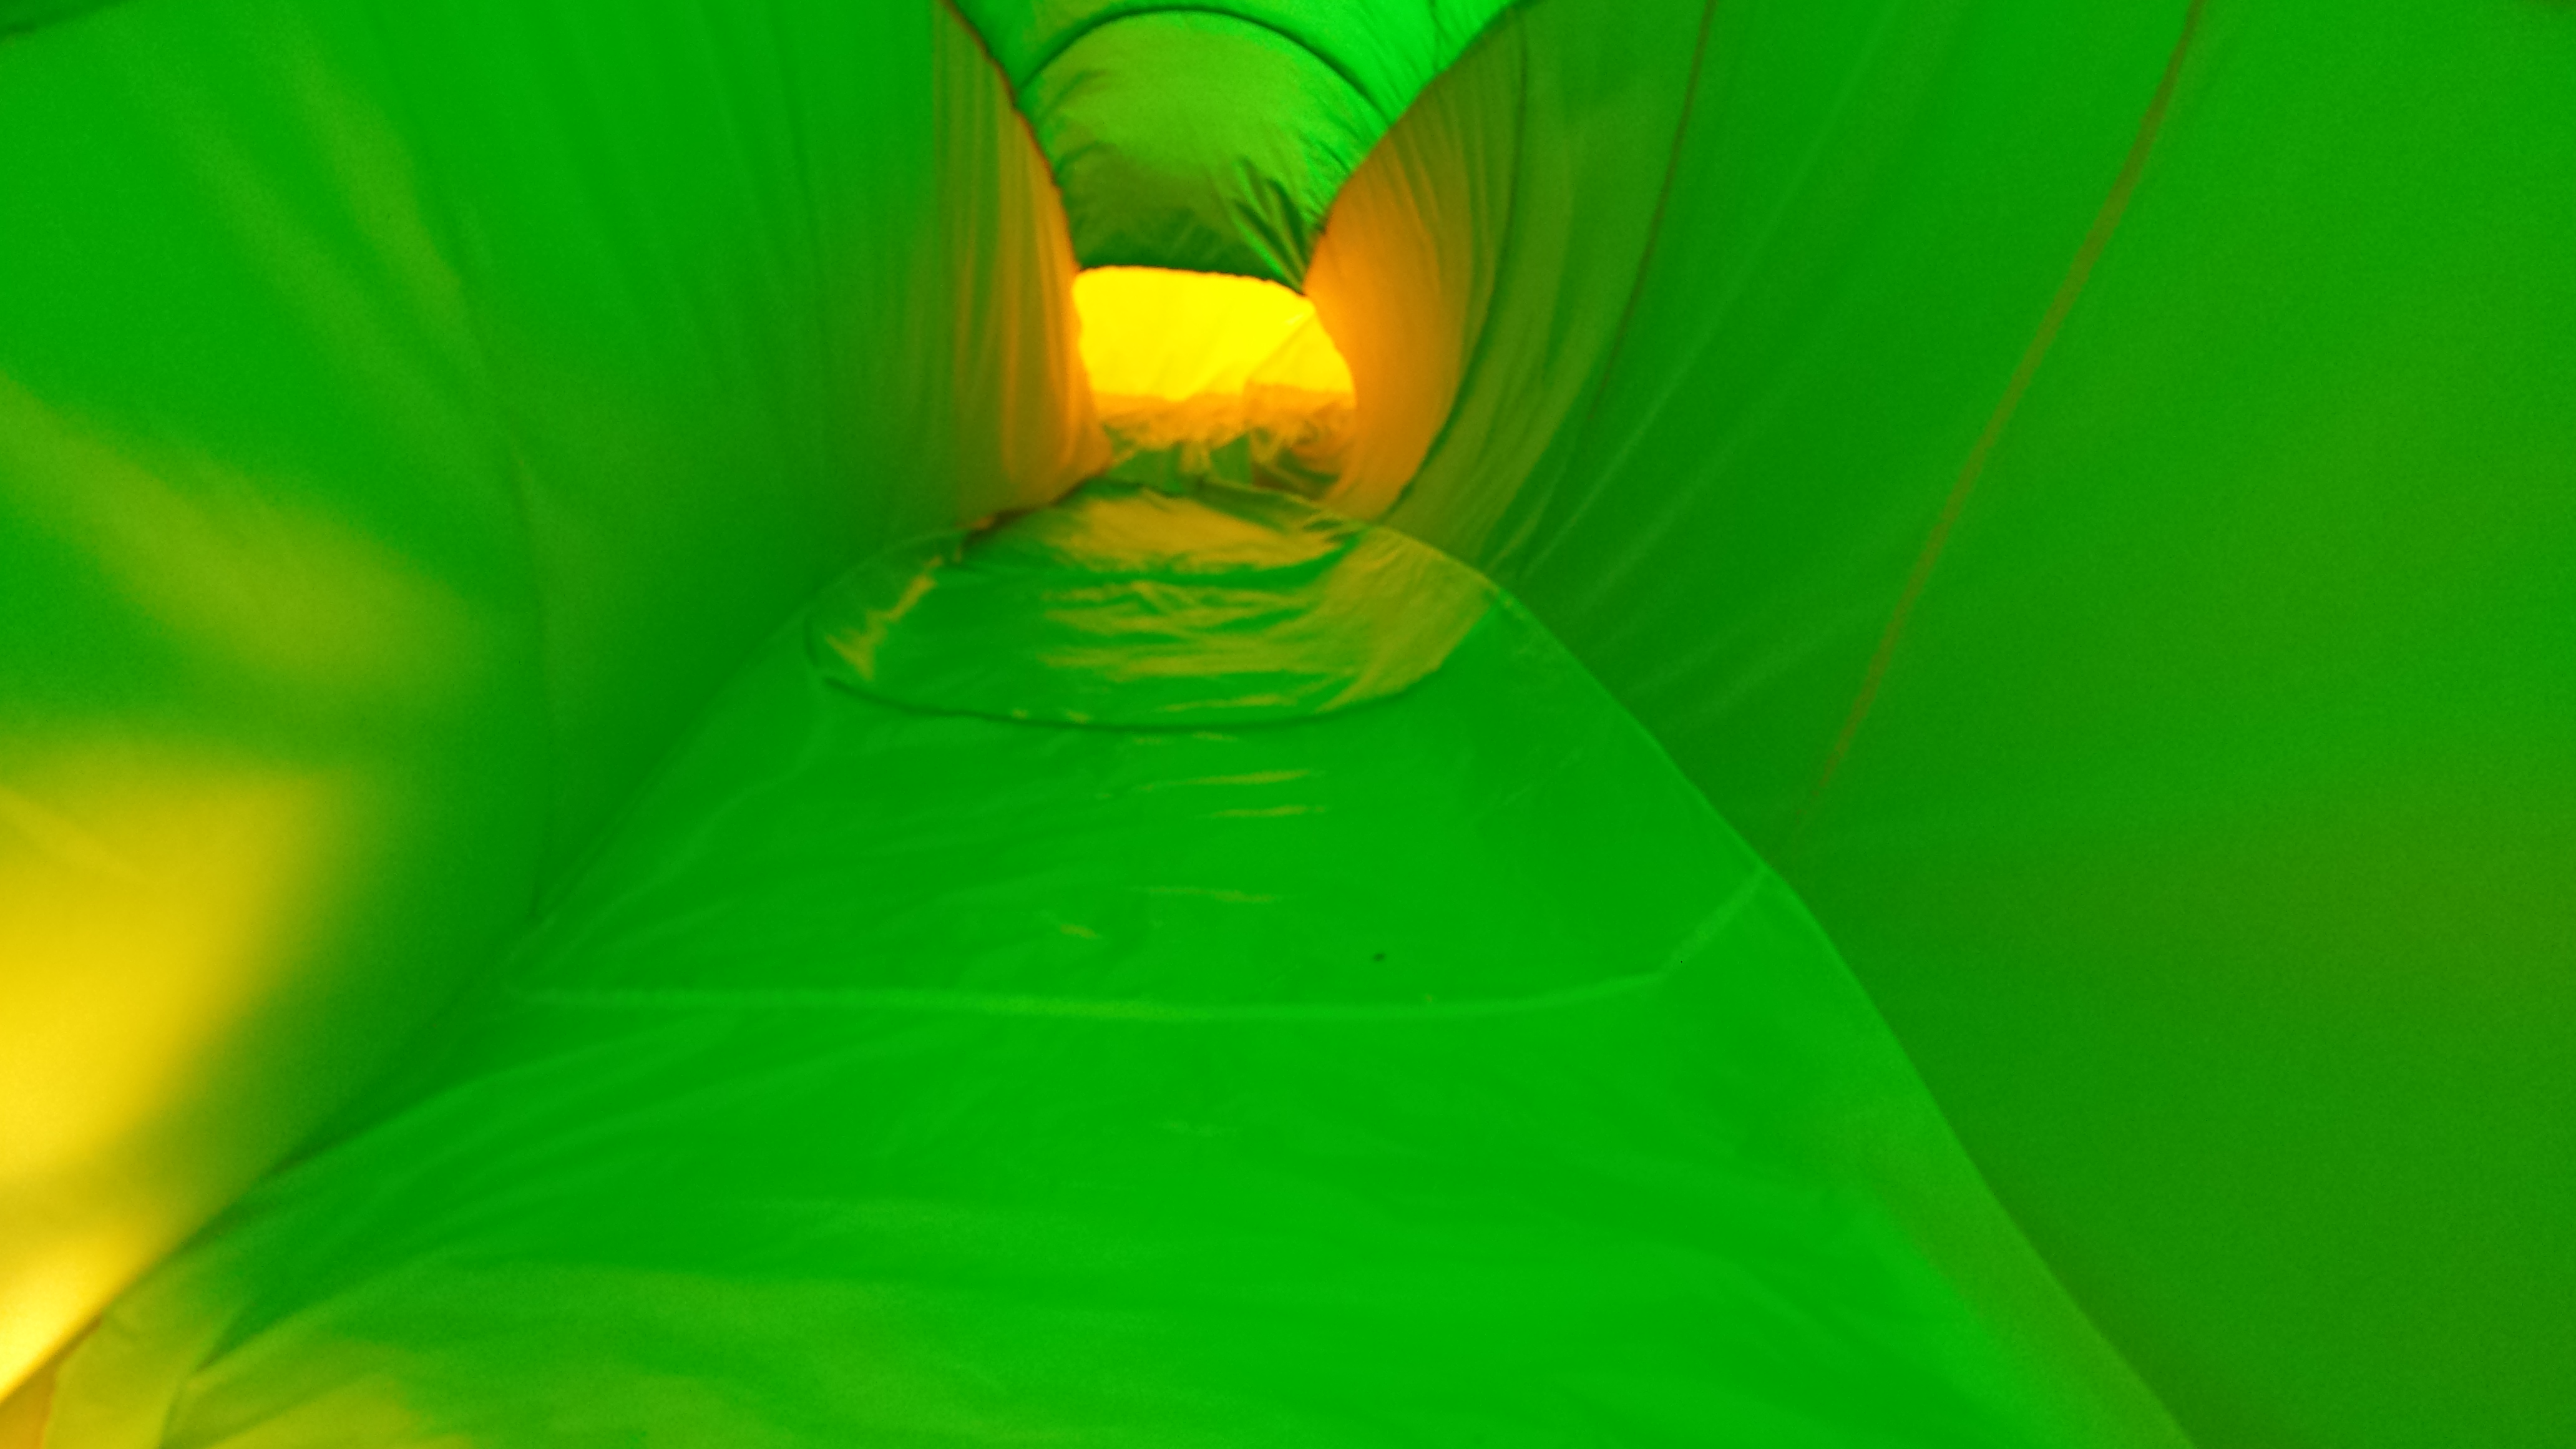 Inside the tubes